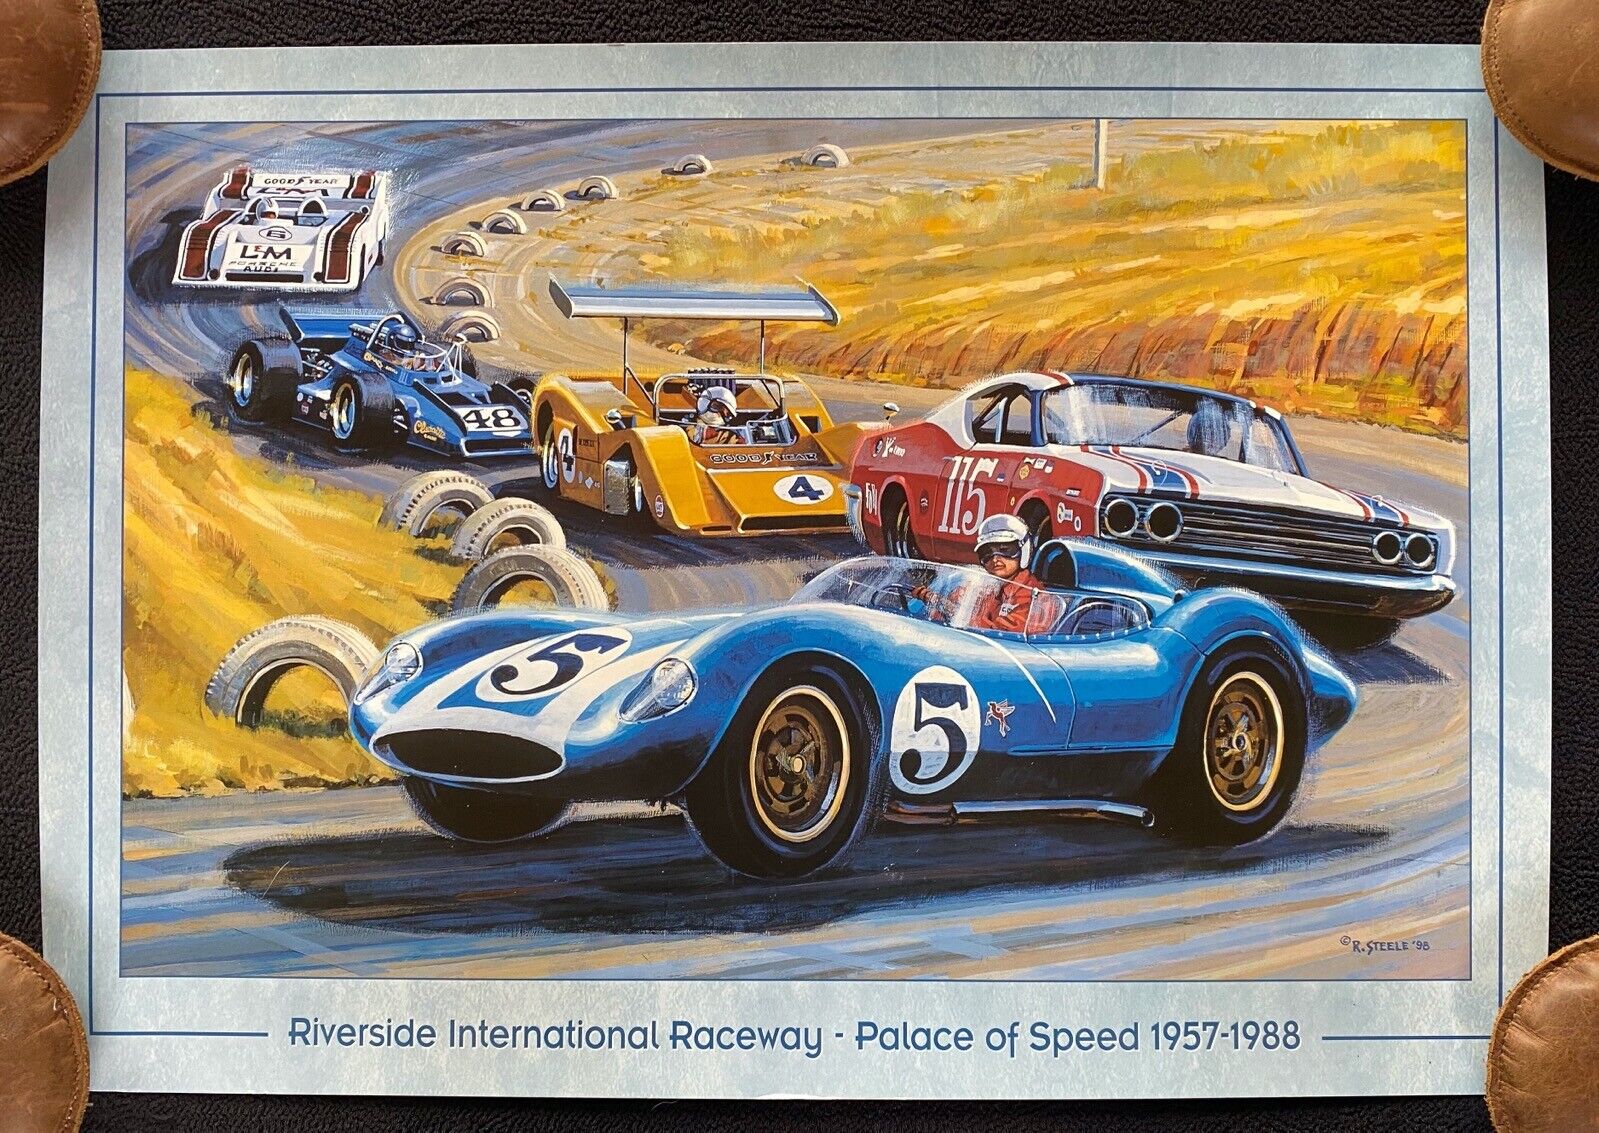 Riverside International Raceway Palace of Speed 1957-1988 Poster Scarab Porsche